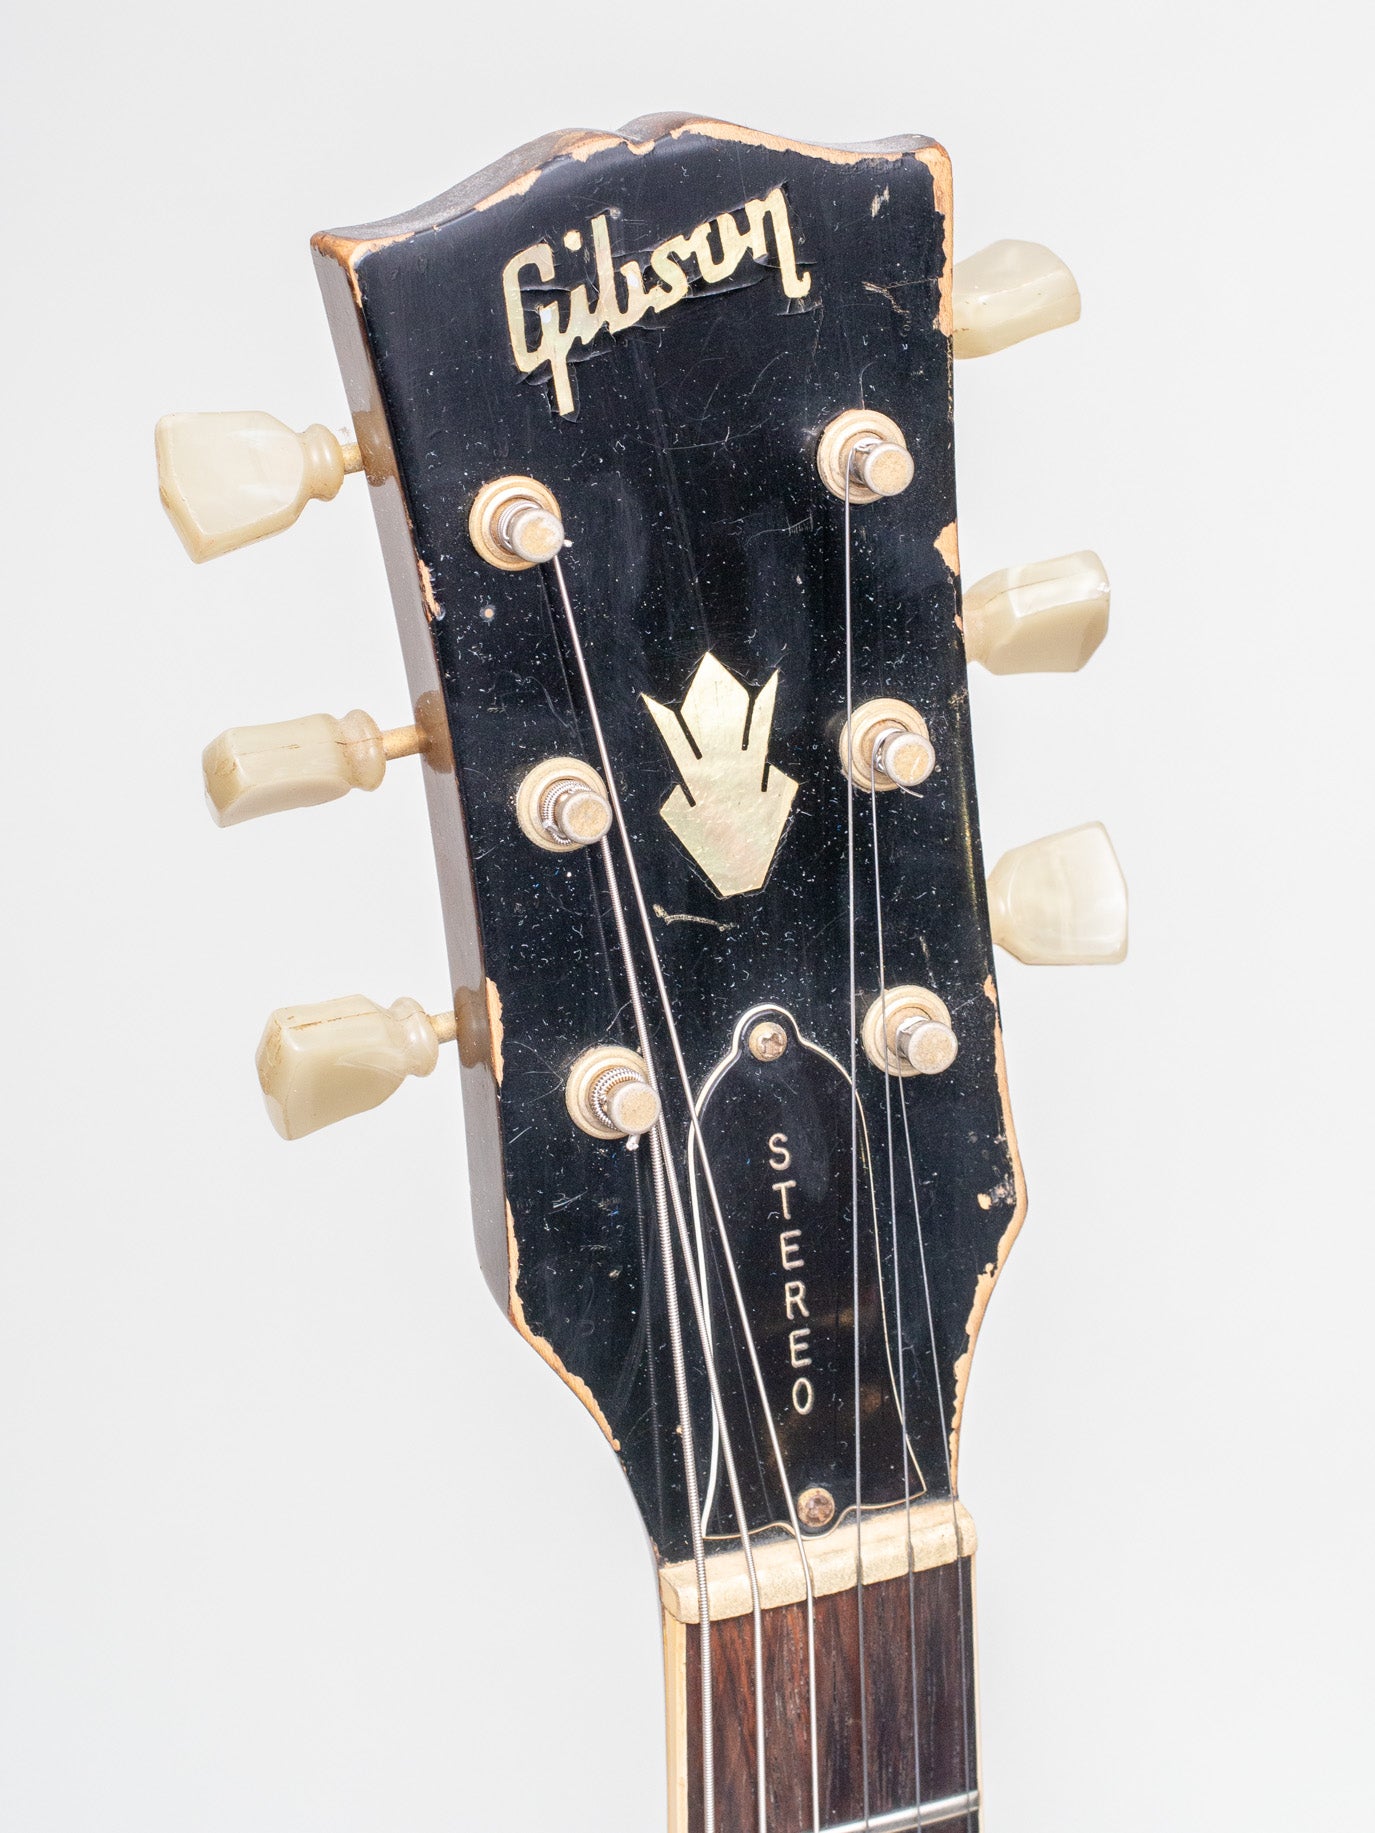 1967 Gibson ES-345TDW